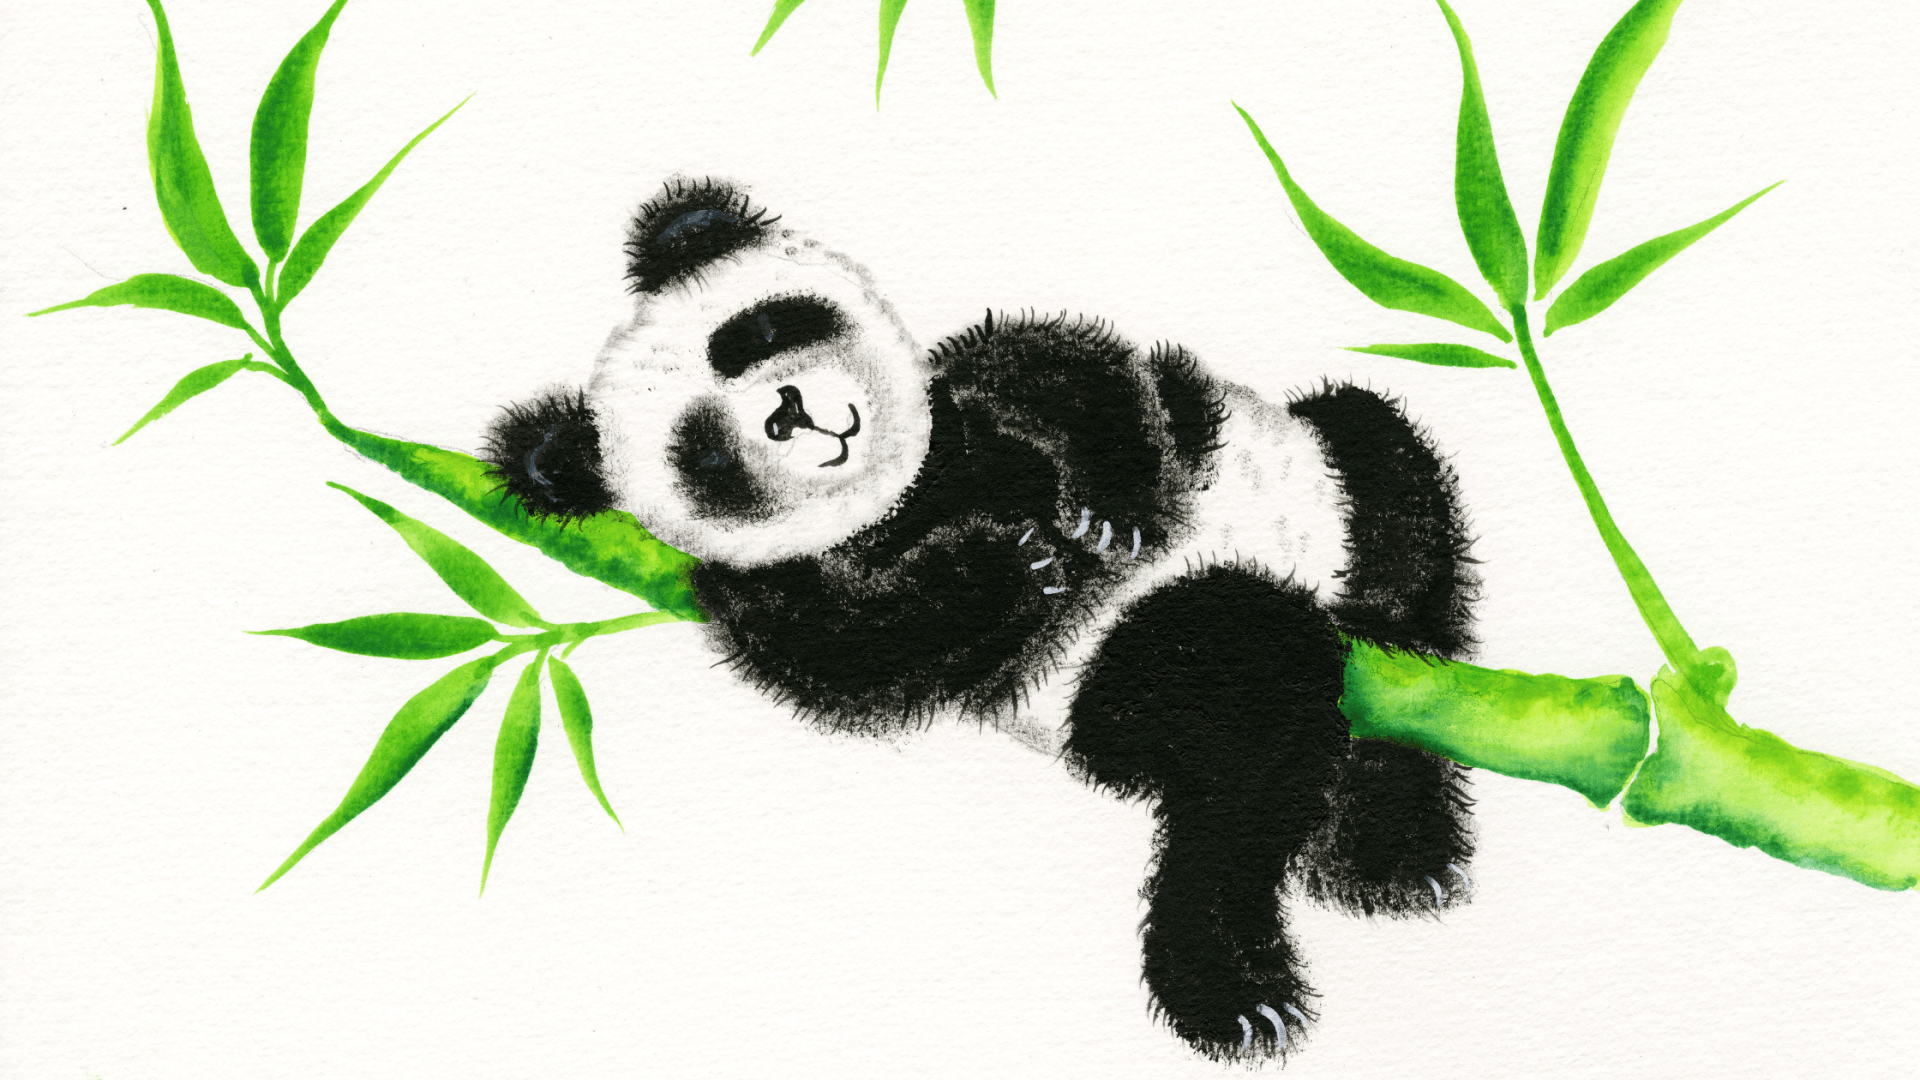 Panda laying in a tree